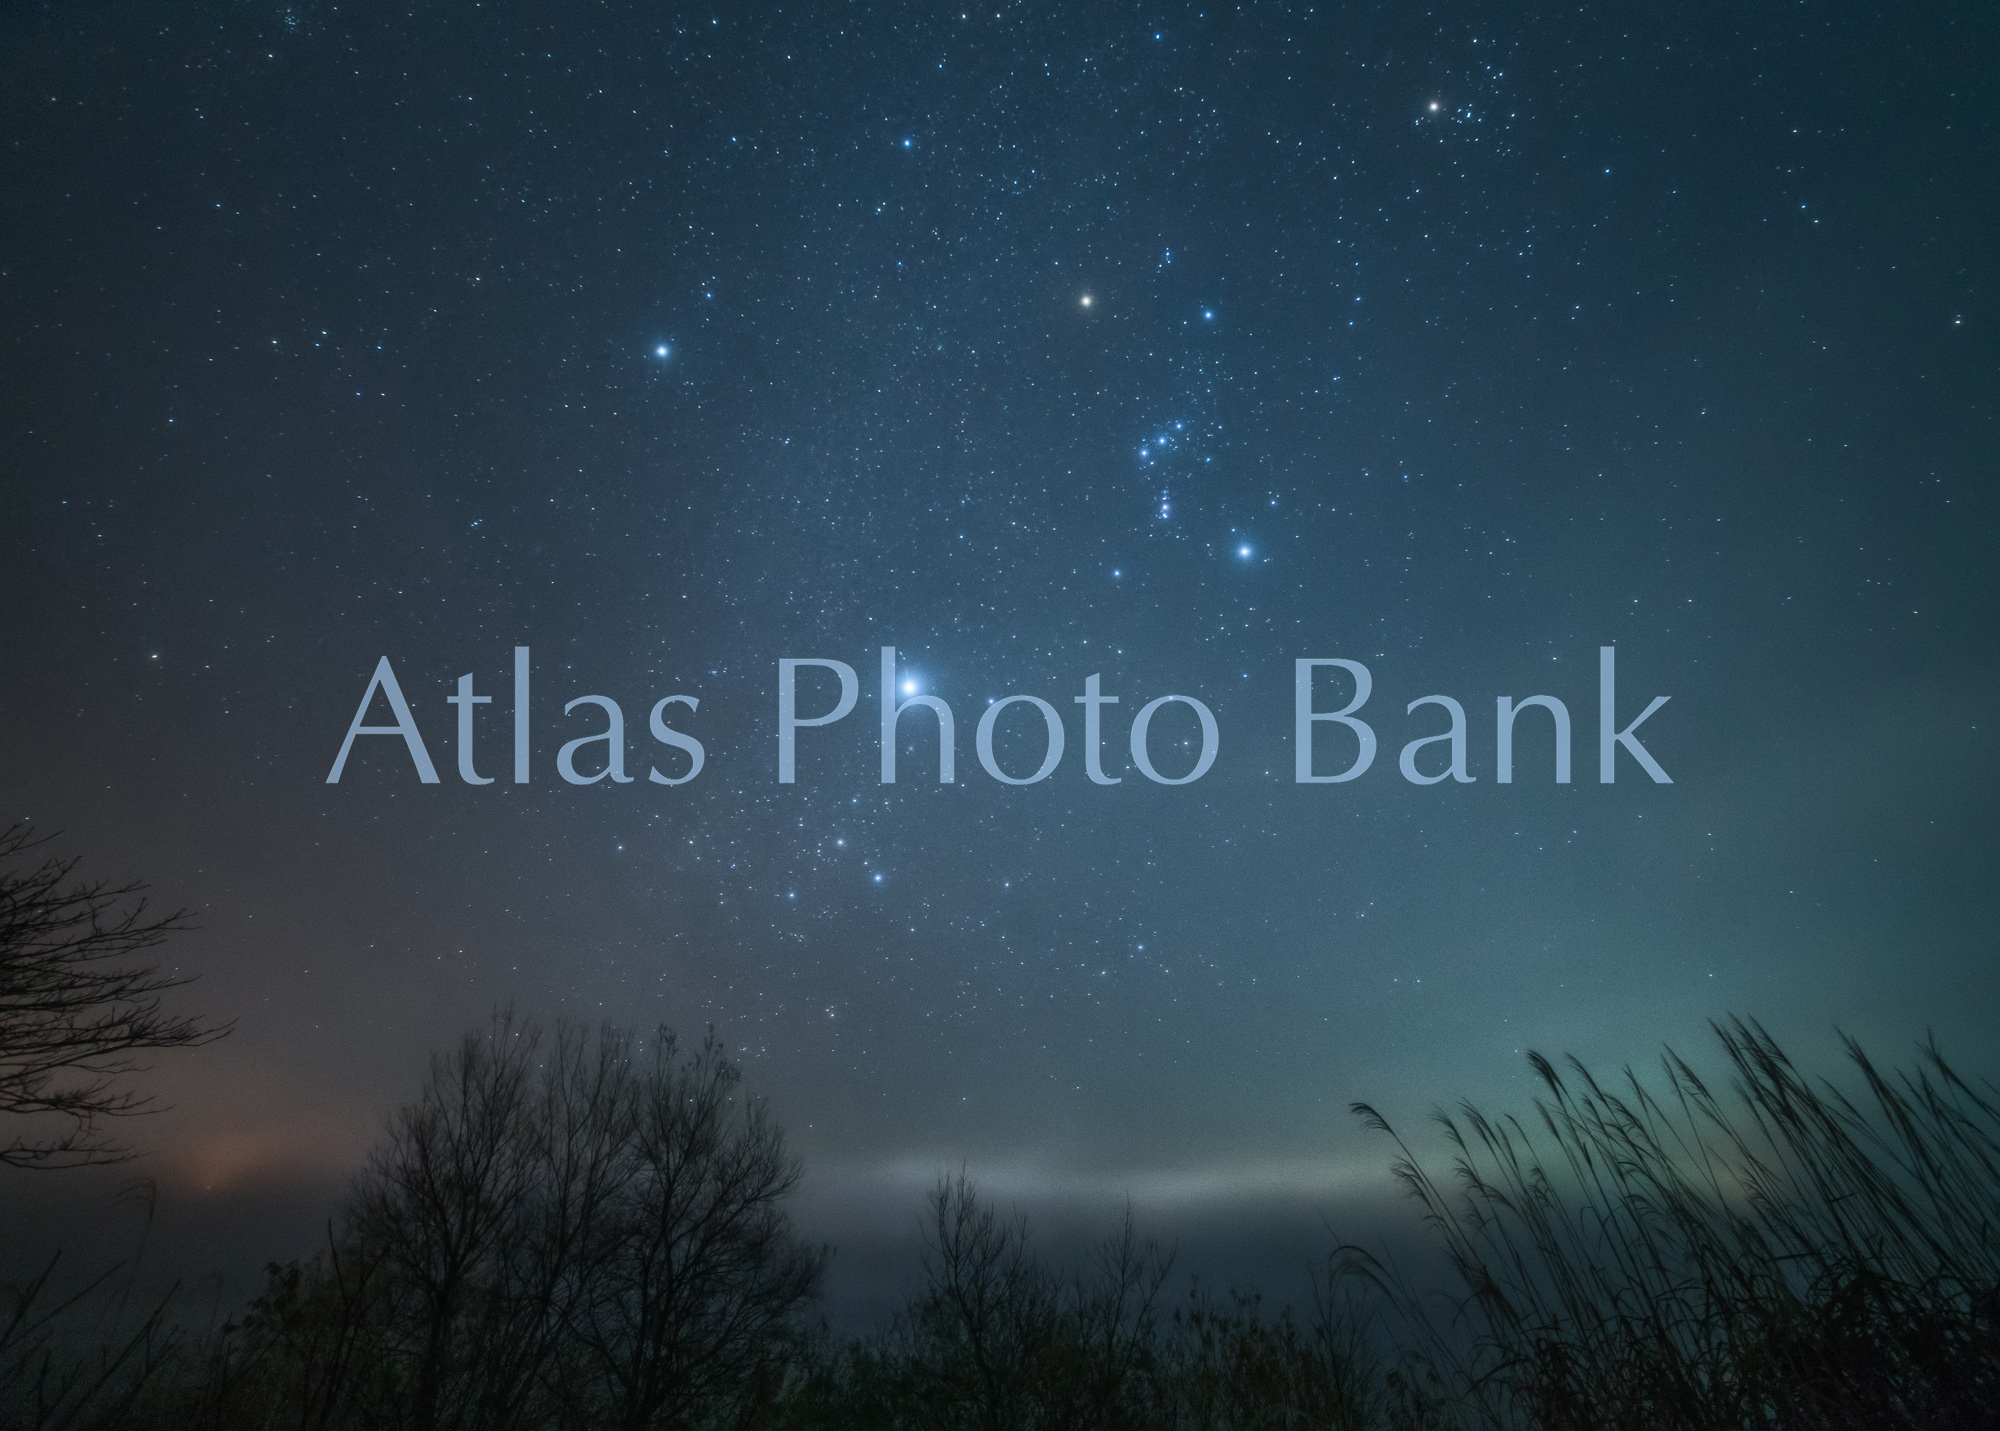 SSP-268-霧の夜に輝く冬の星座